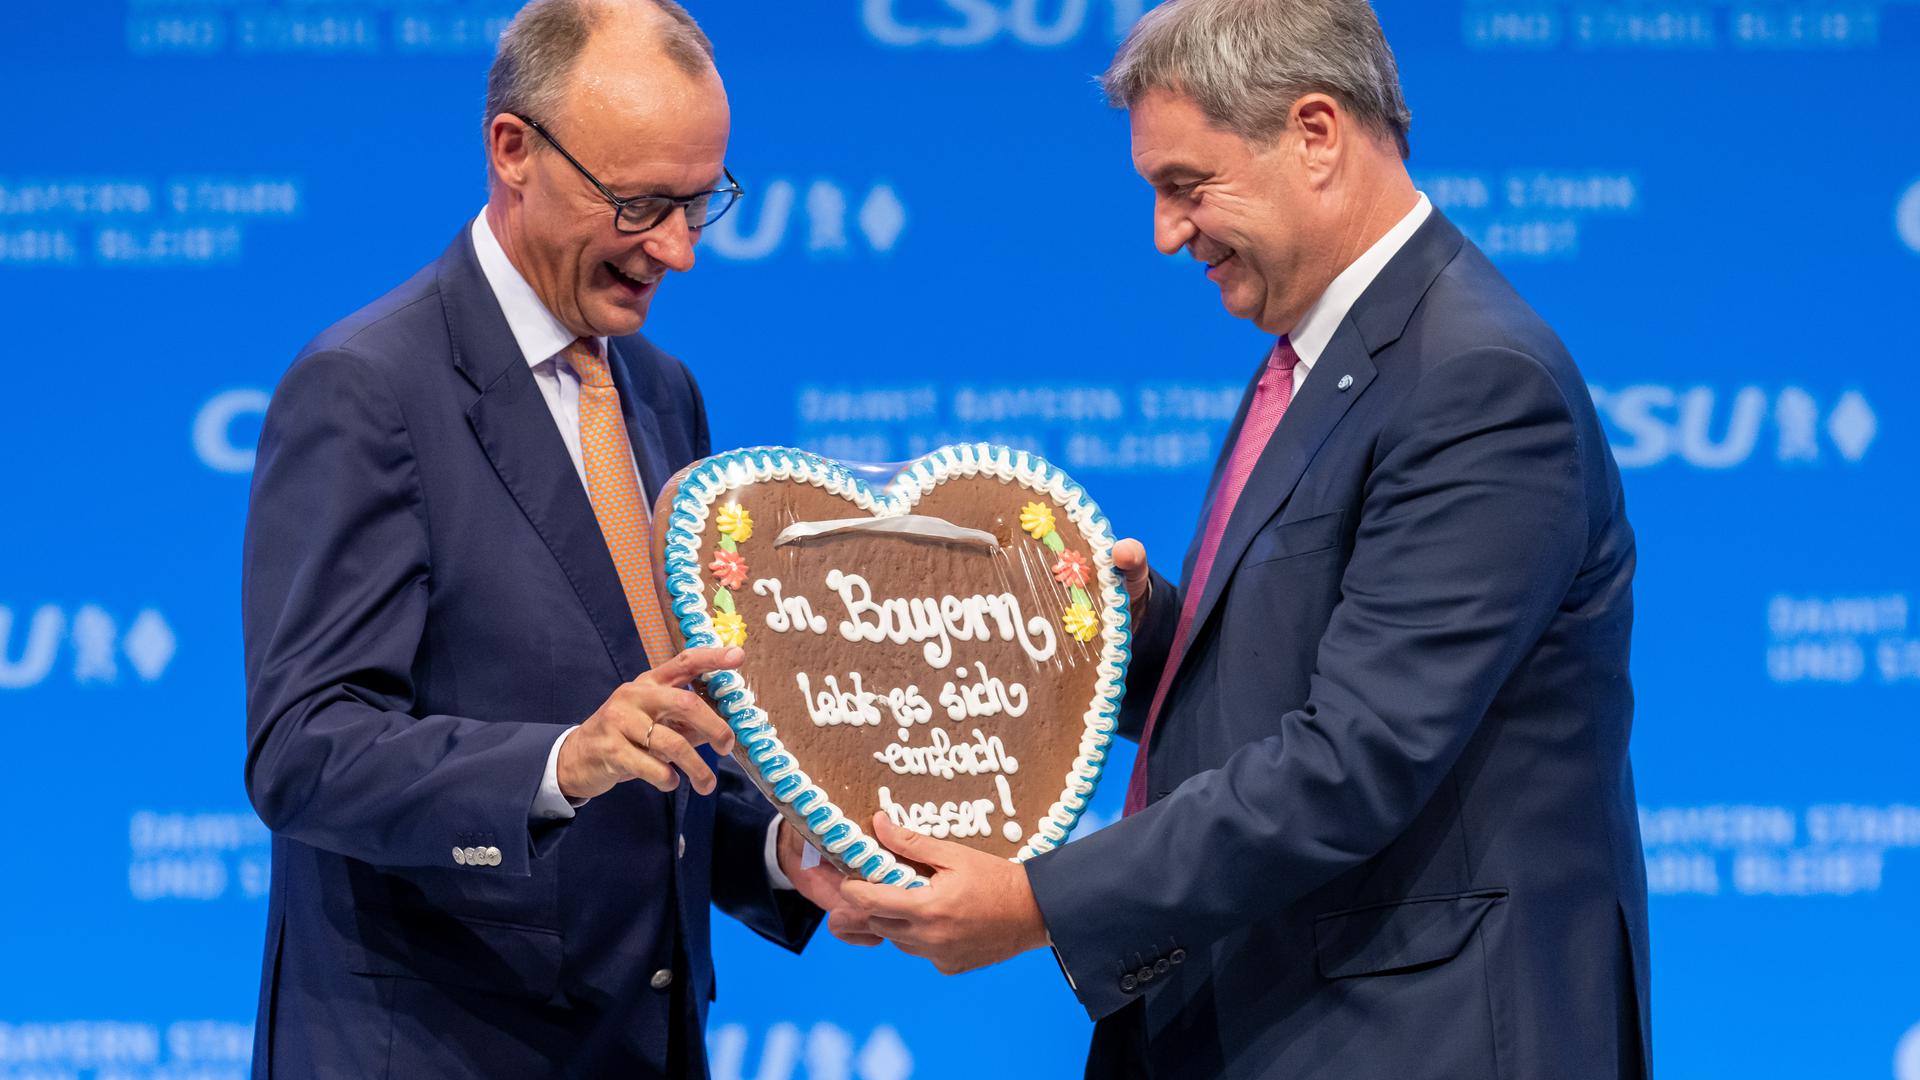 Friedrich Merz (l.), CDU-Vorsitzender, bekommt auf dem Parteitag der CSU von Markus Söder, CSU-Parteivorsitzender, ein Lebkuchenherz mit der Aufschrift „In Bayern lebt es sich einfach besser!“ geschenkt. 